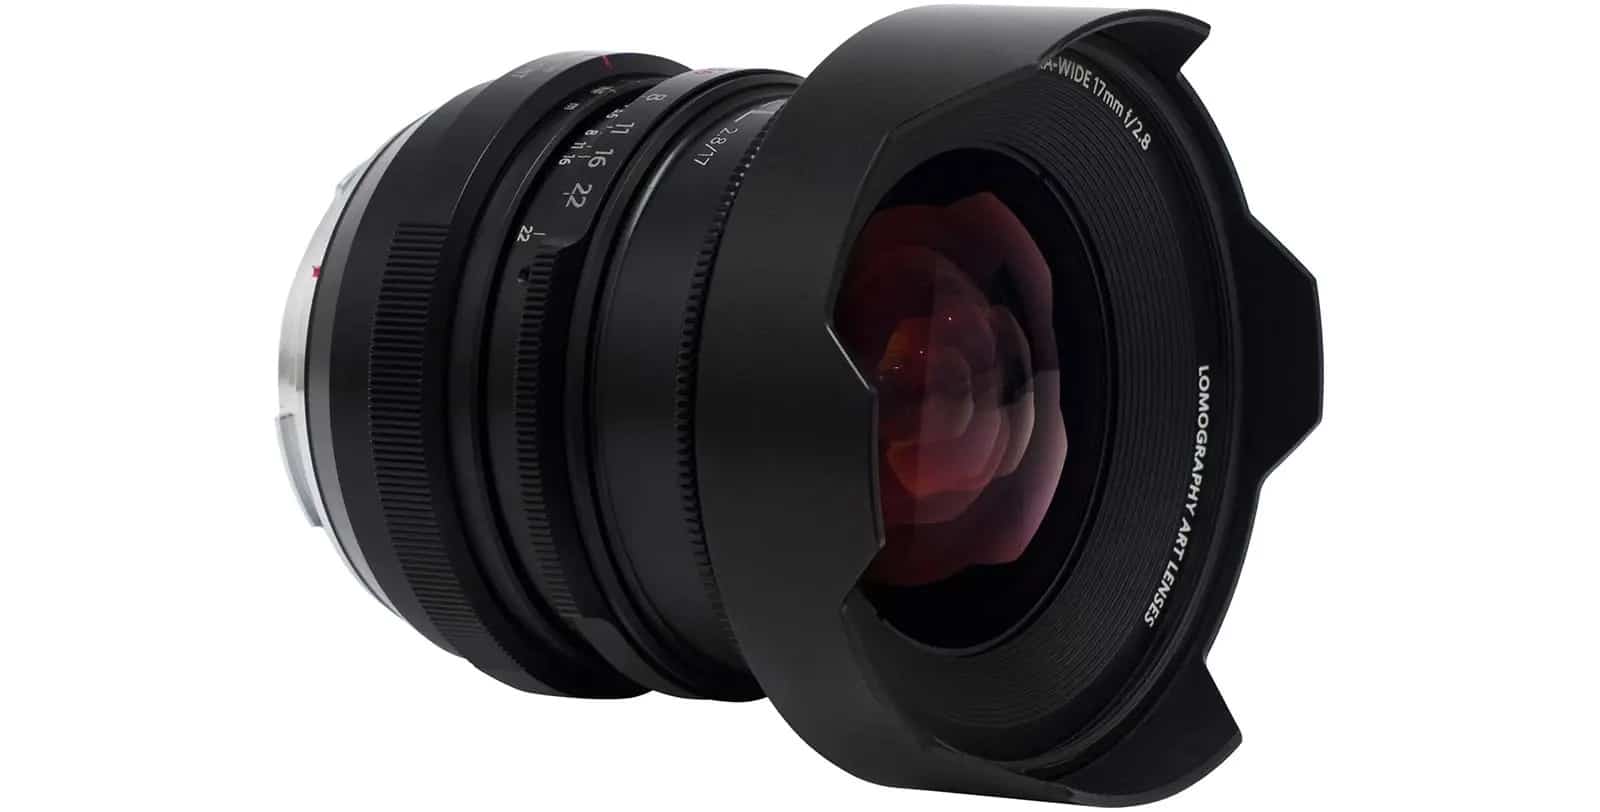 Ống kính Lomography Atoll Ultra-Wide 17mm F2.8 cho máy ảnh full frame mirrorless ra mắt